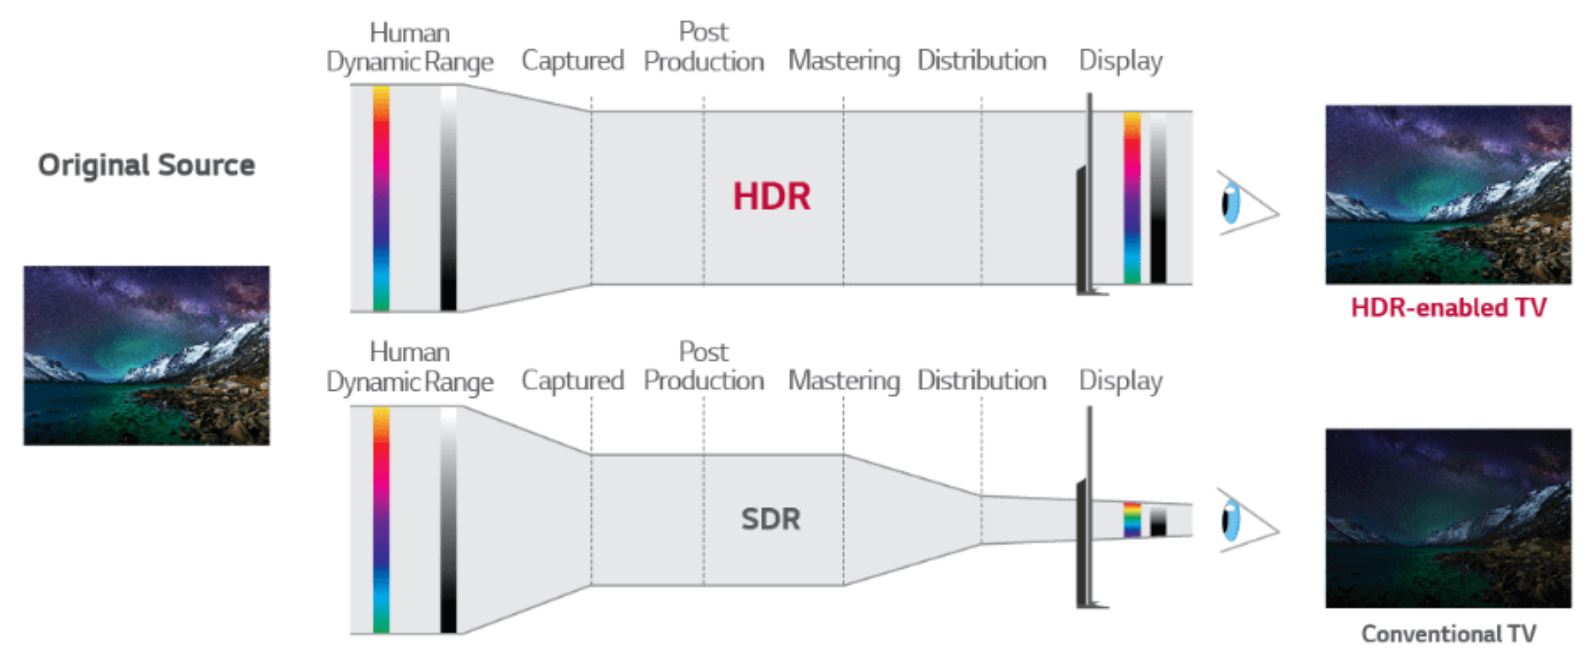 HDR V SDR